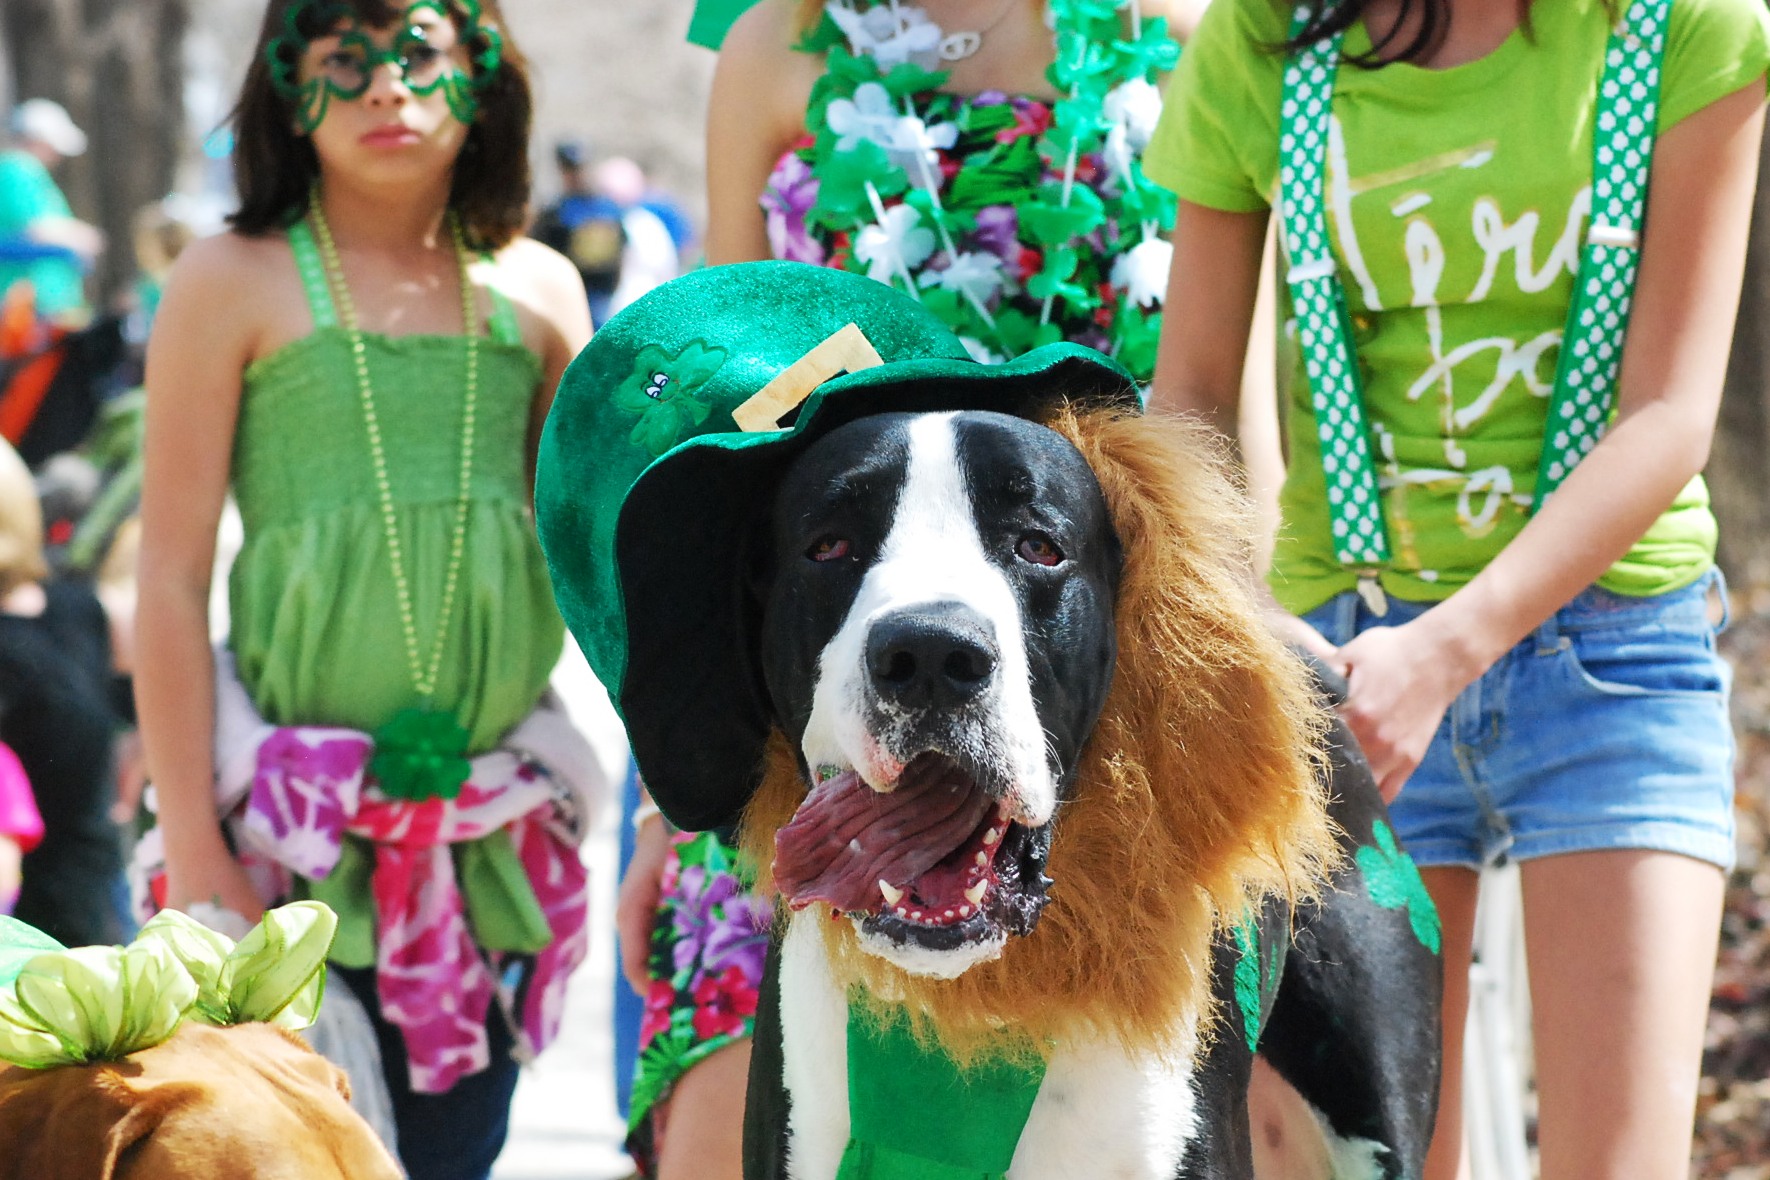 St. Patrick’s Day Parade Oklahoma City [photo essay]